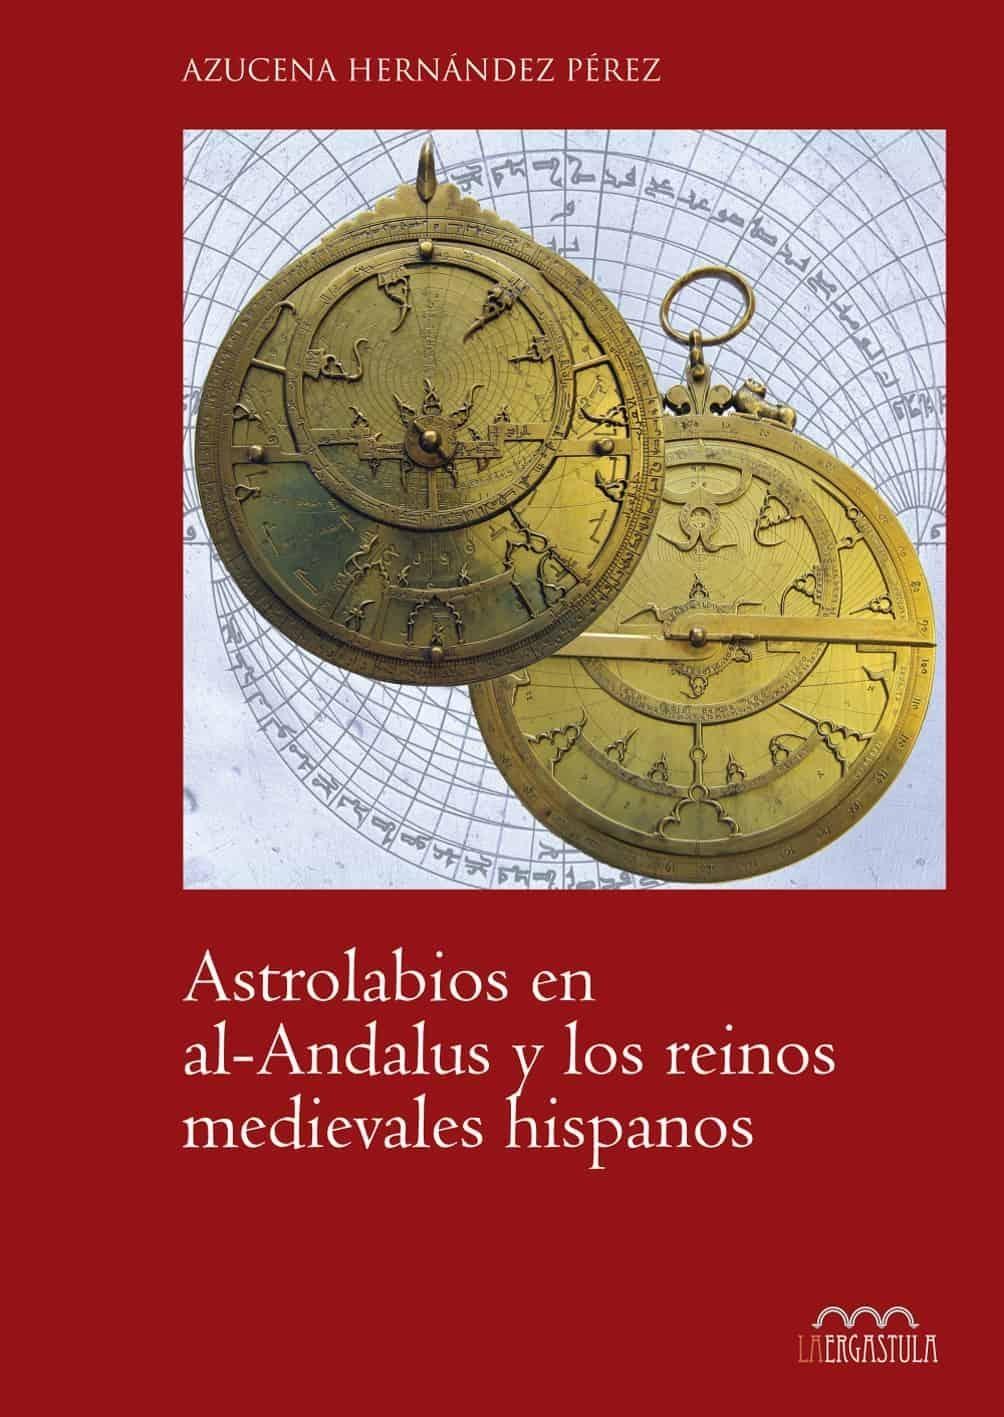 Astrolabios en al-Andalus y los reinos medievales hipanos